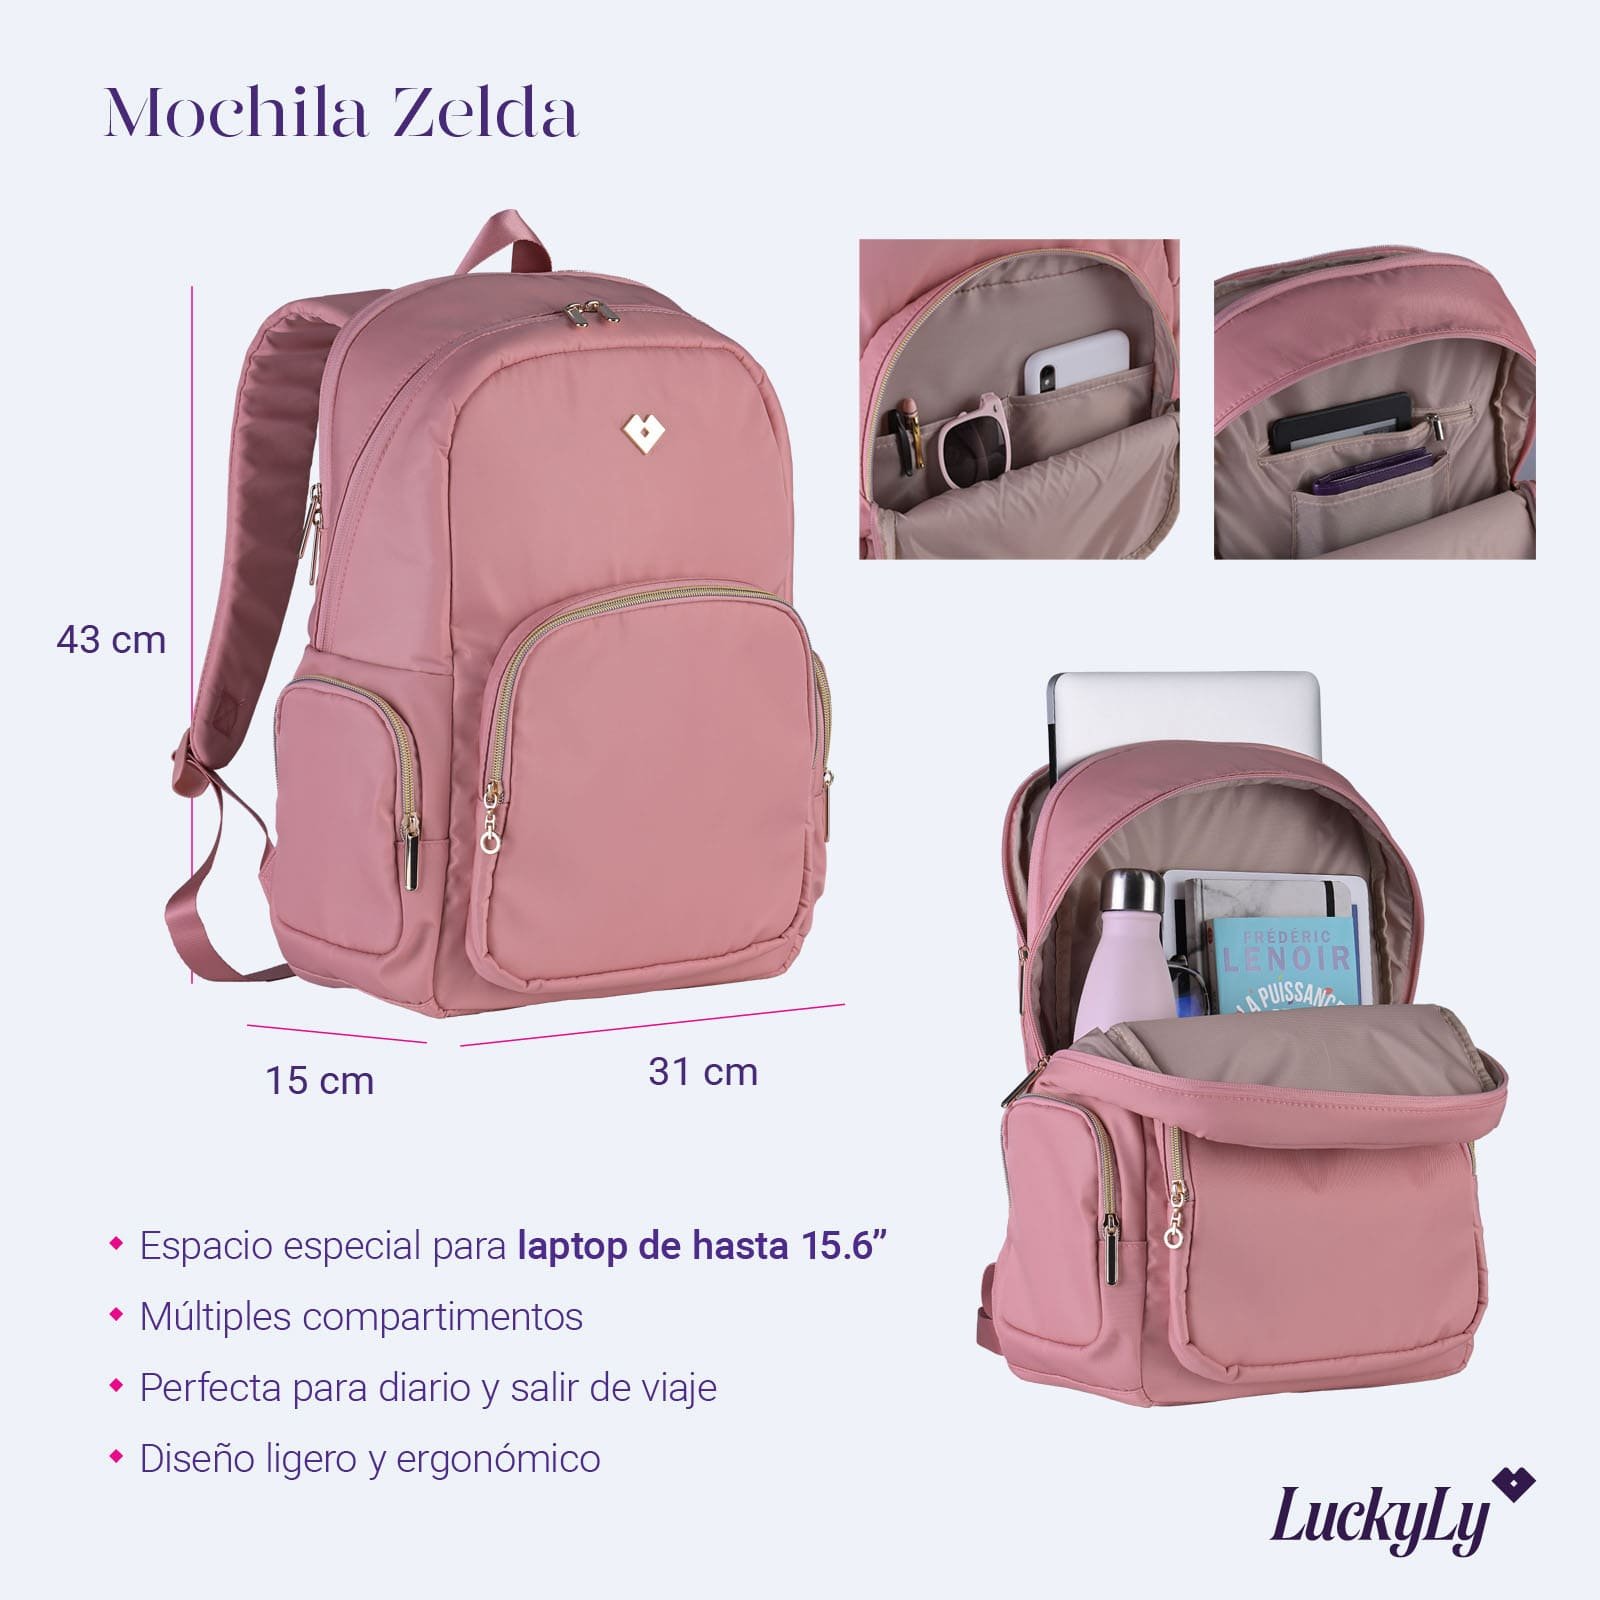 LuckyLy Mochila para Laptop Mujer hasta 15.6 Pulgadas, Moderna con  Múltiples Compartimentos, Modelo Zelda, Rosa